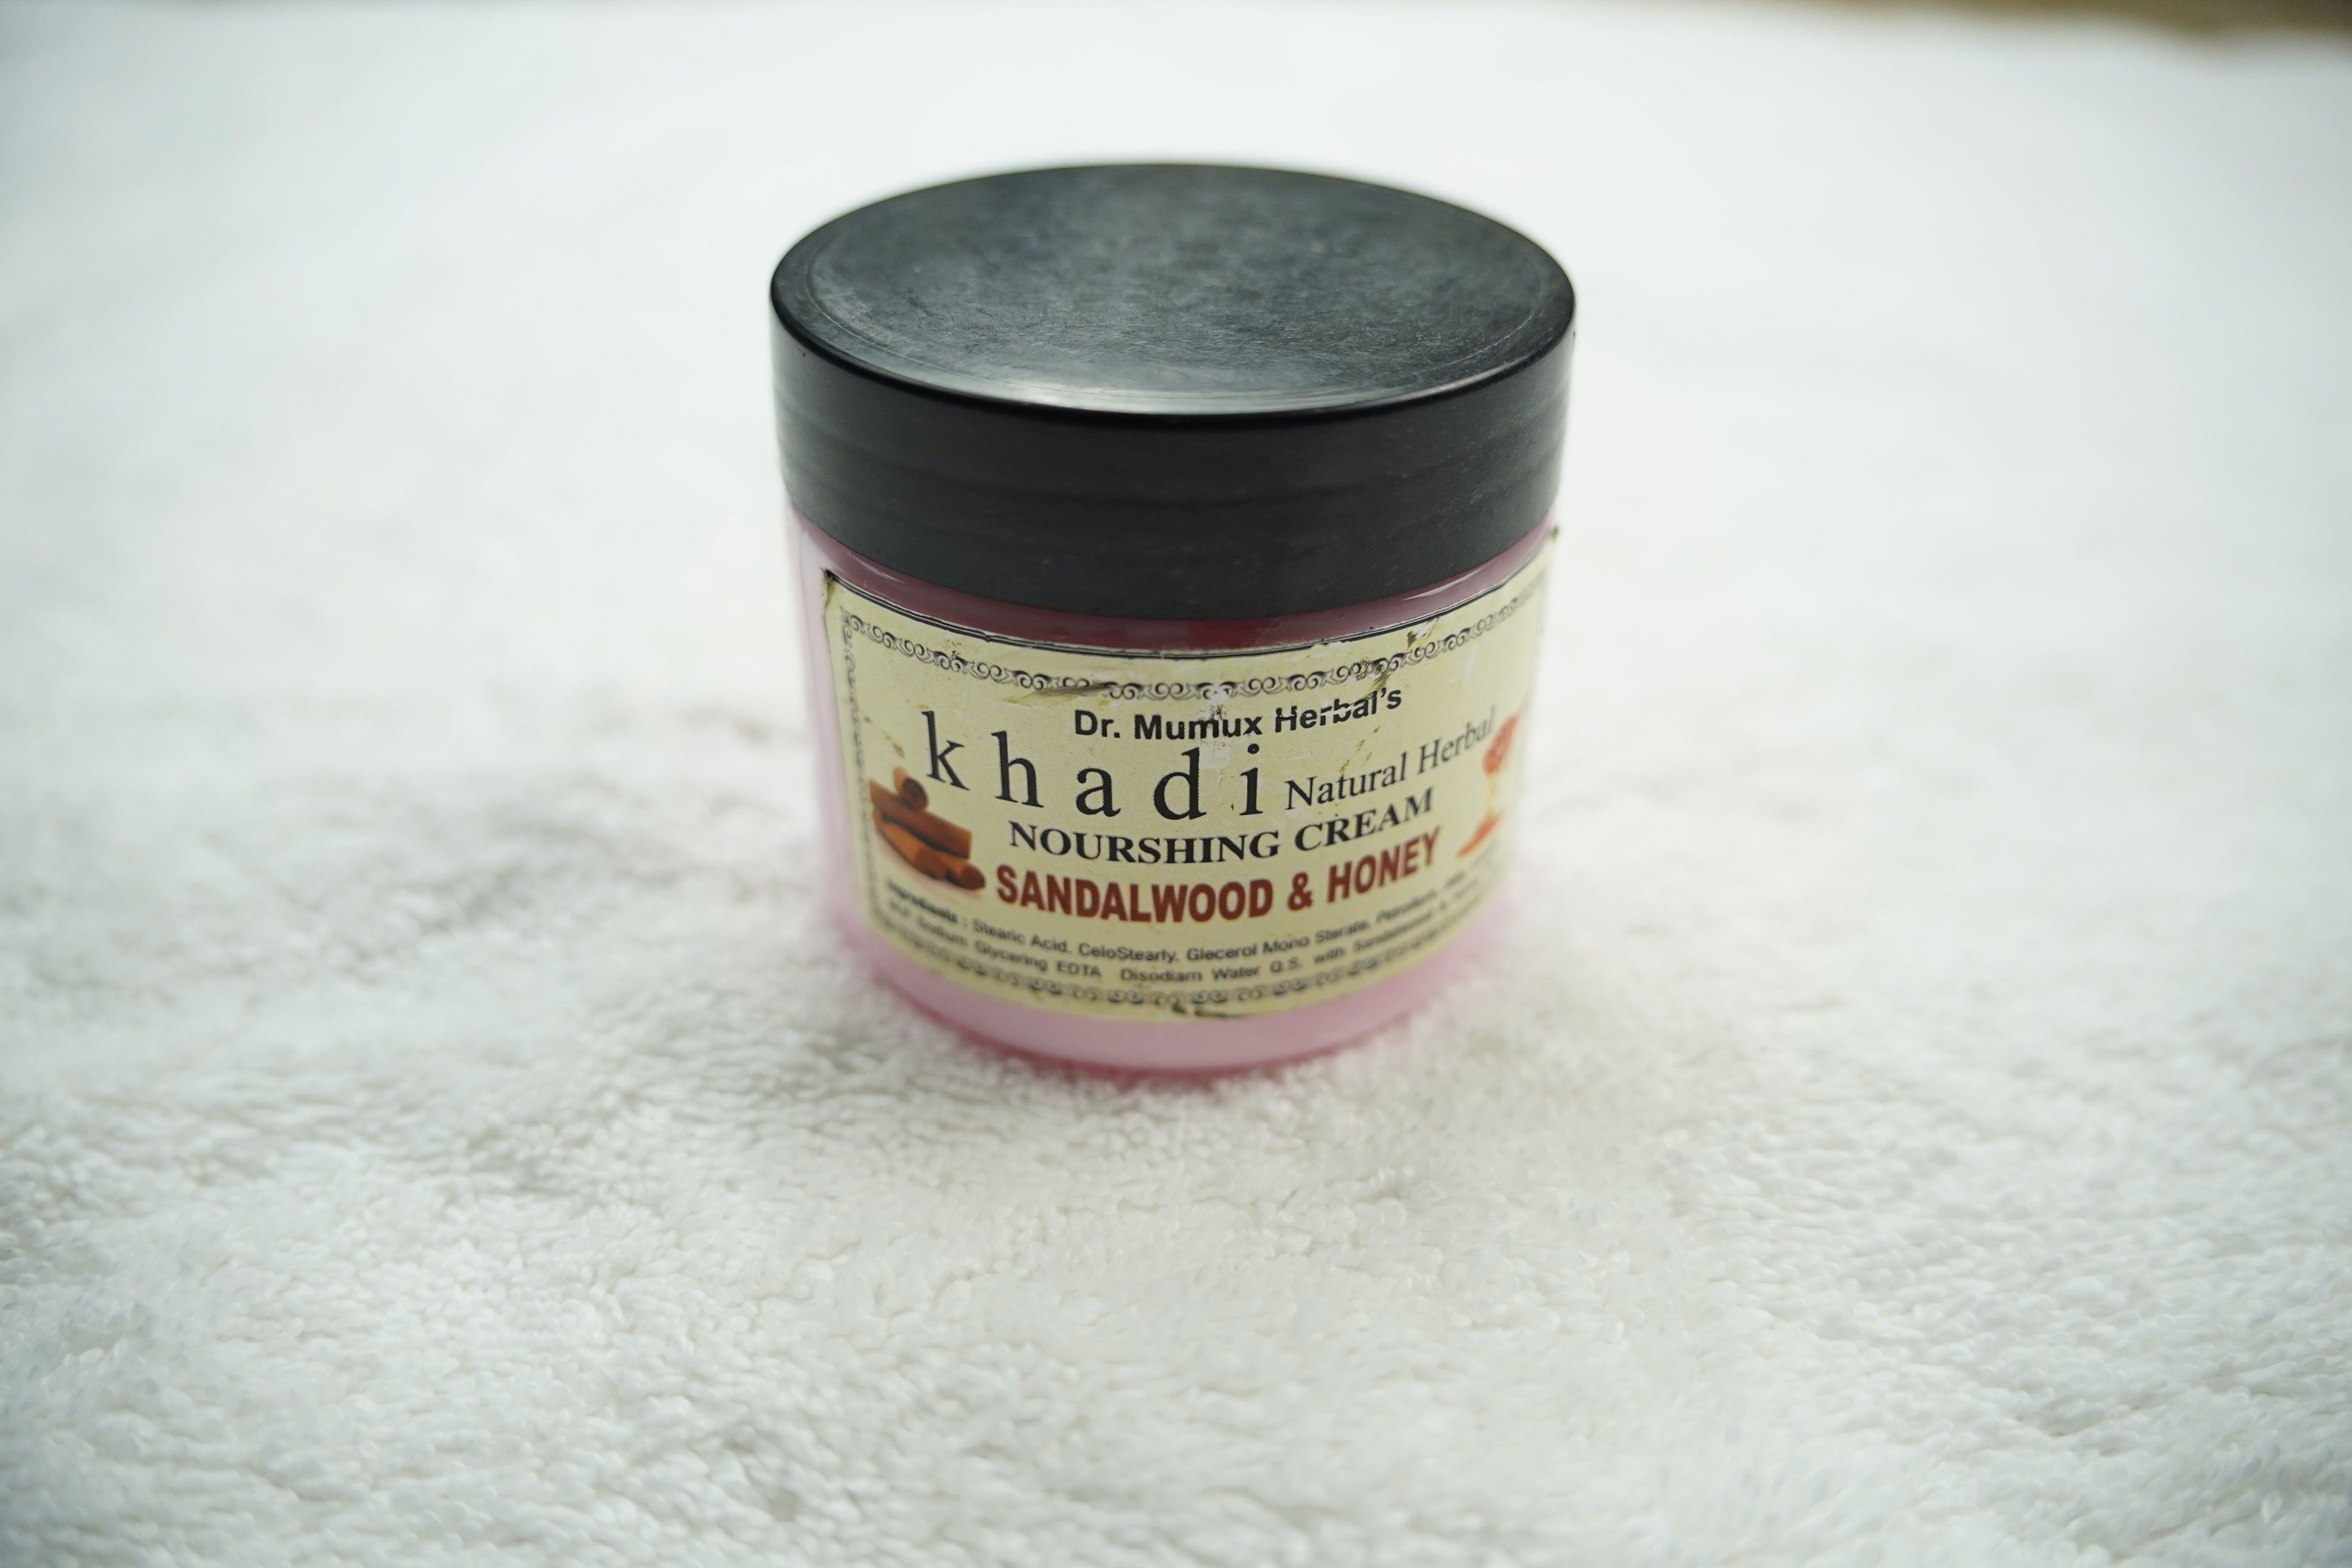 Khadi India: Nourishing Cream with Sandalwood & Honey - Embrace Natural Radiance! 180g/6.4oz